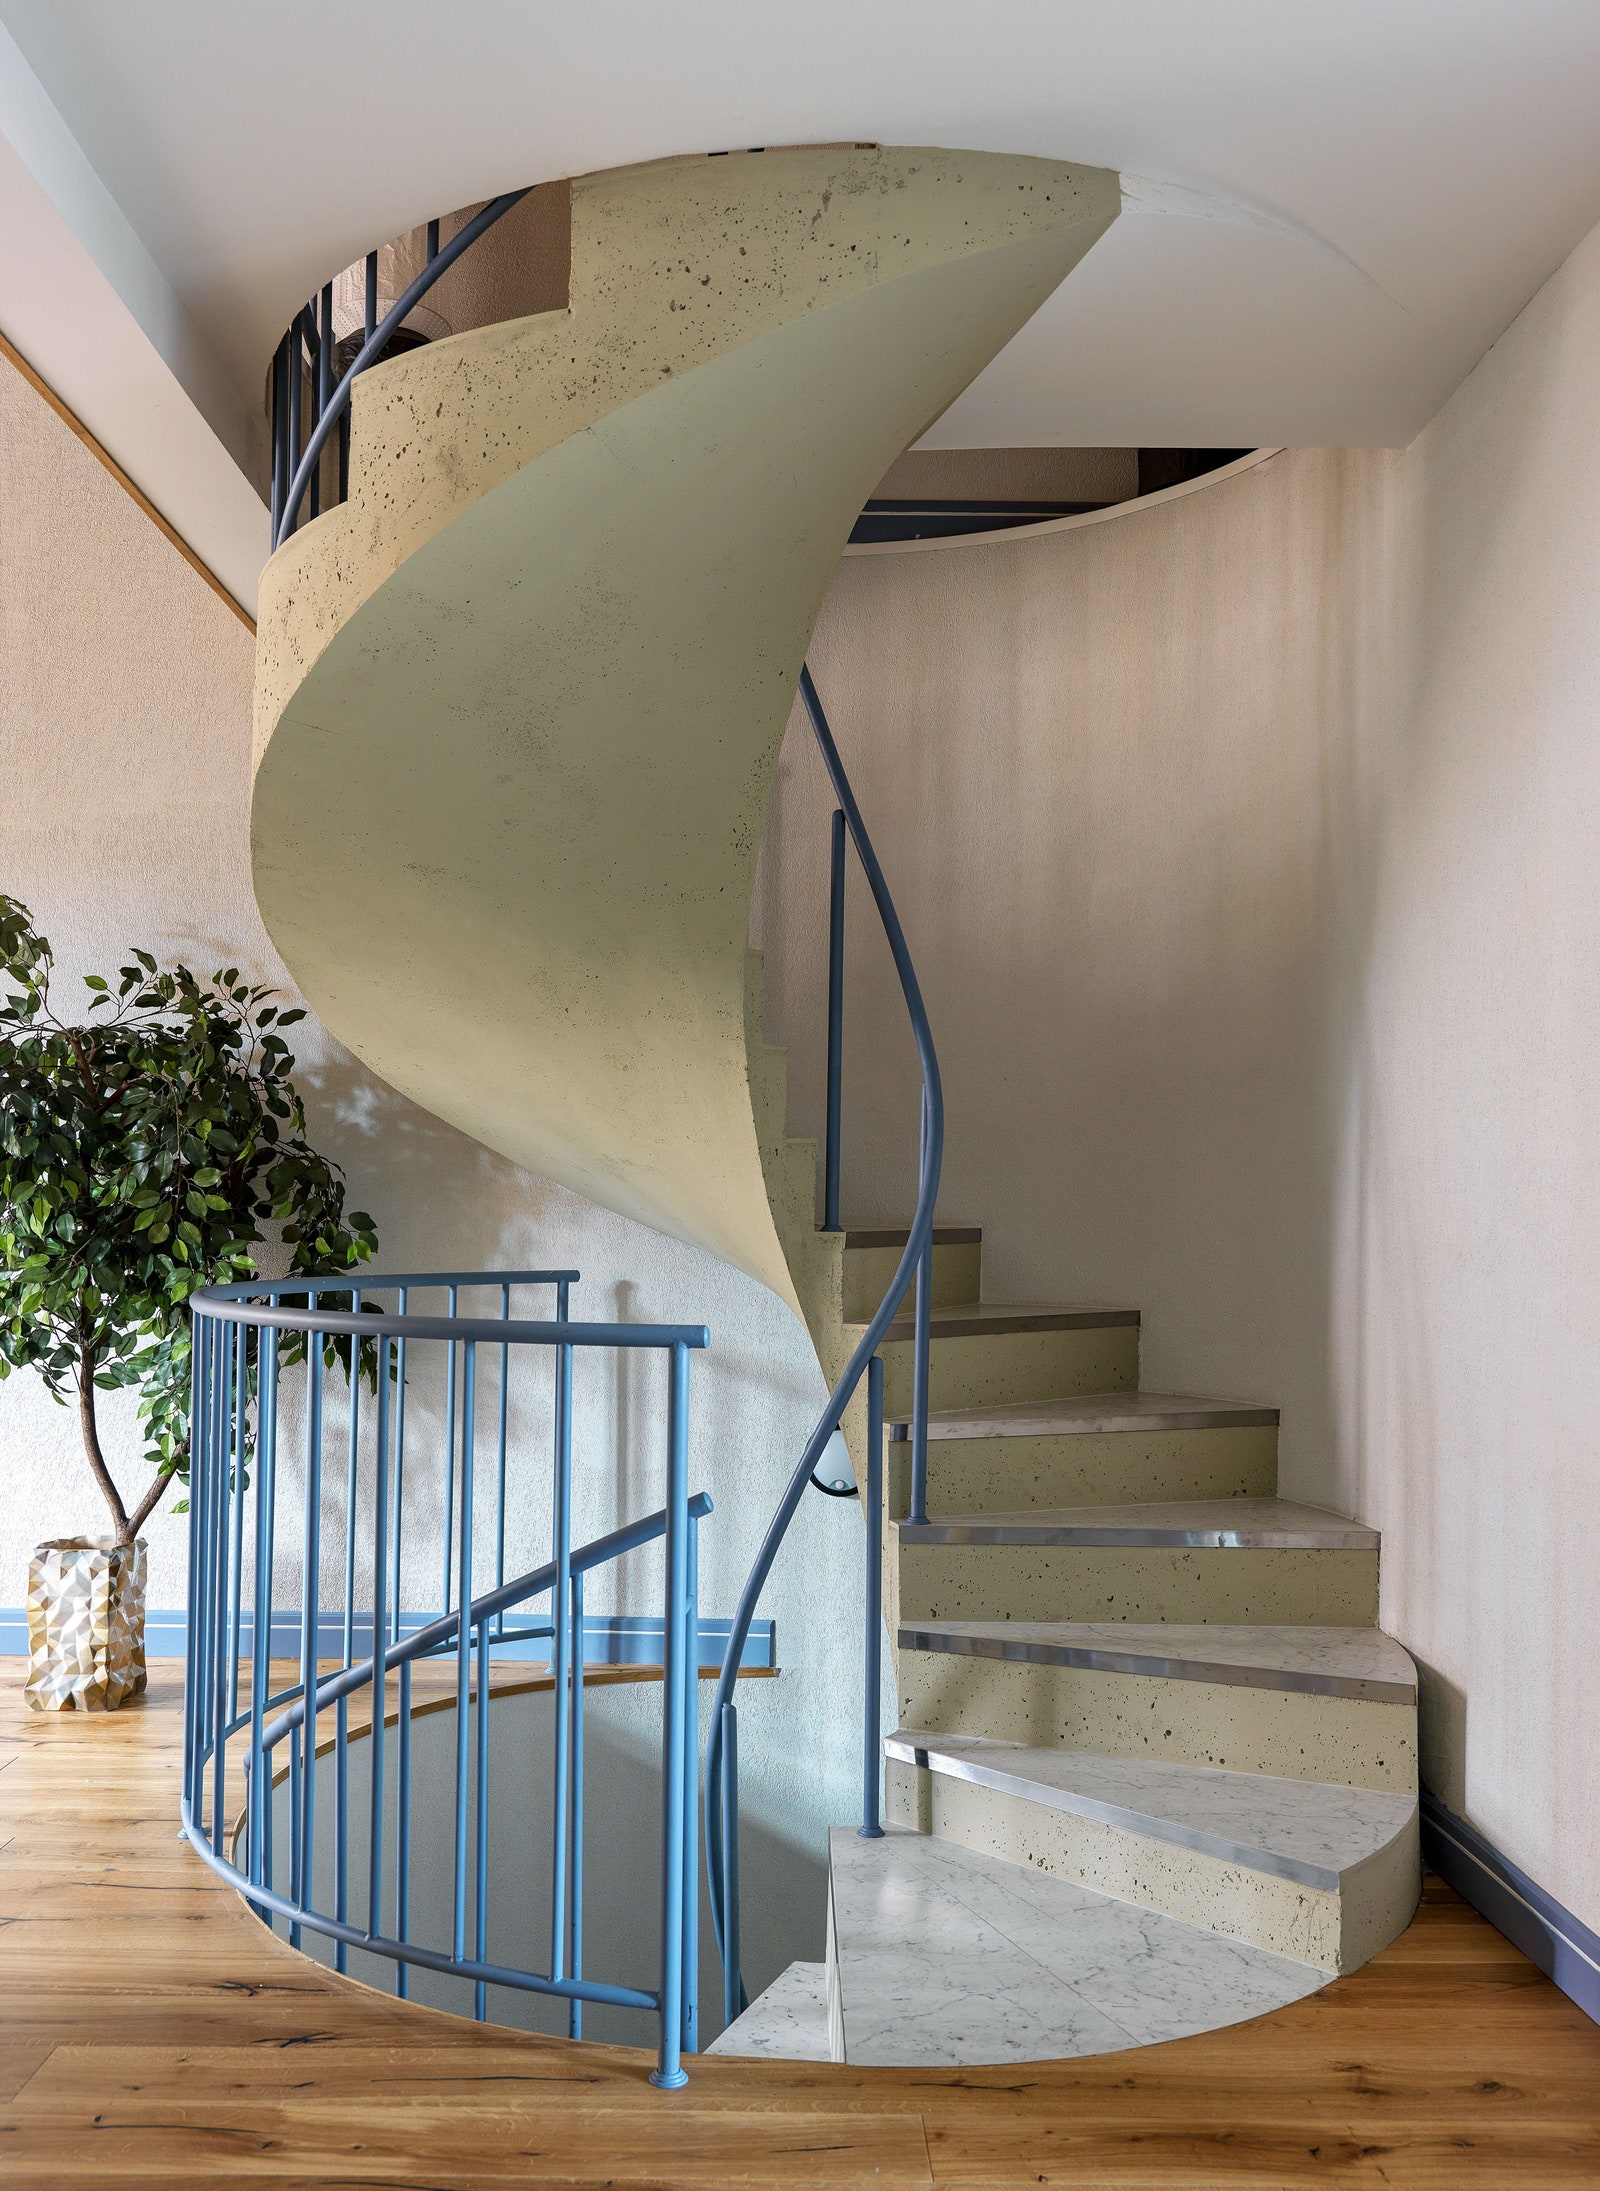 Винтовая лестница сделана по эскизам дизайнера в компании “Мастерия”. Ступени отделаны керамогранитом Kerama Marazzi.